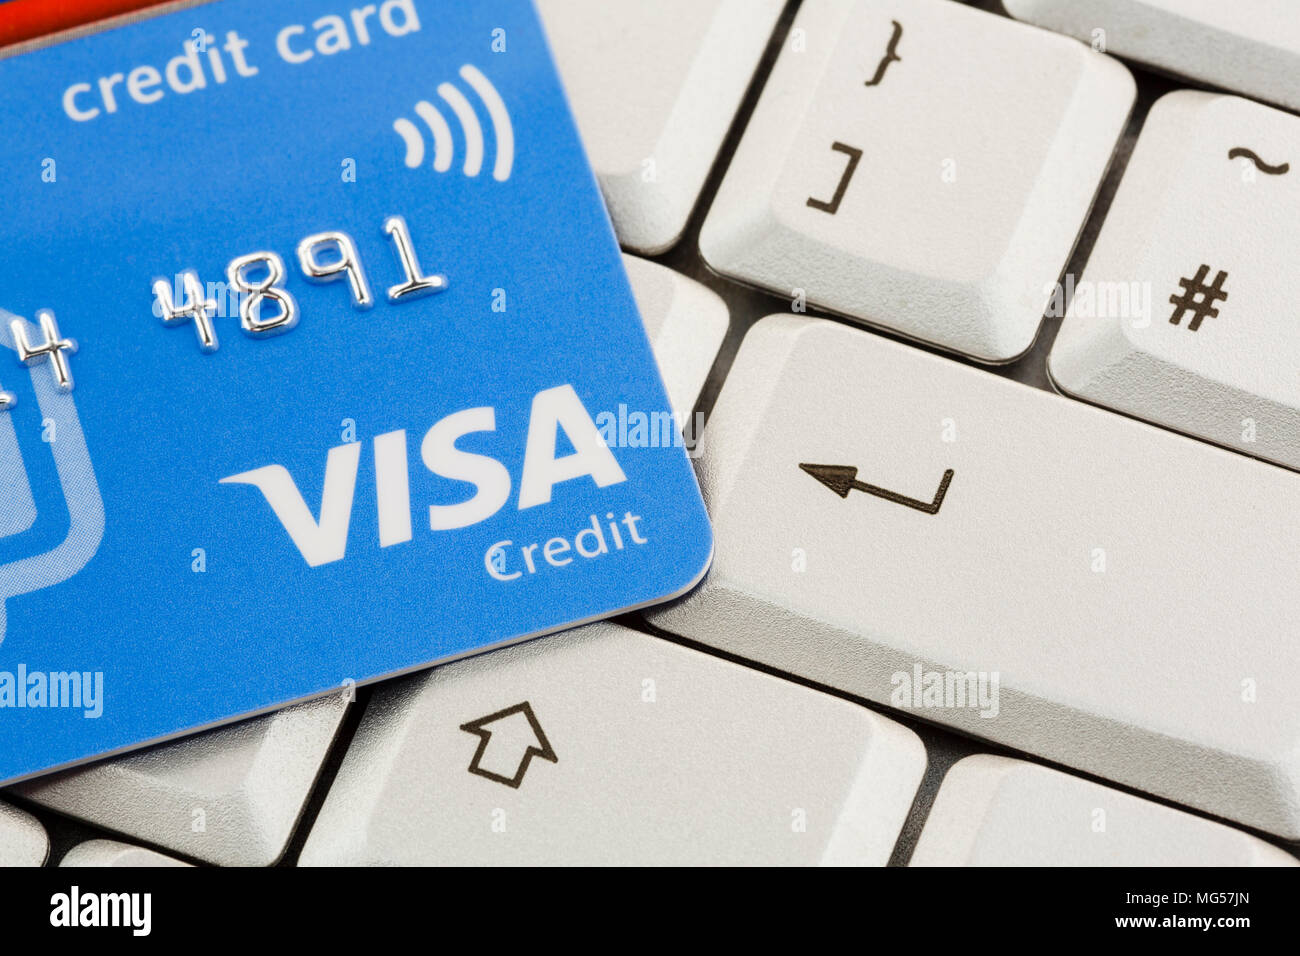 Carte Visa carte de crédit sur un clavier avec la touche entrée. Illustrer  le concept d'achat par paiement Internet en ligne à l'aide d'une carte de  crédit. Angleterre Royaume-Uni Grande-Bretagne Photo Stock -